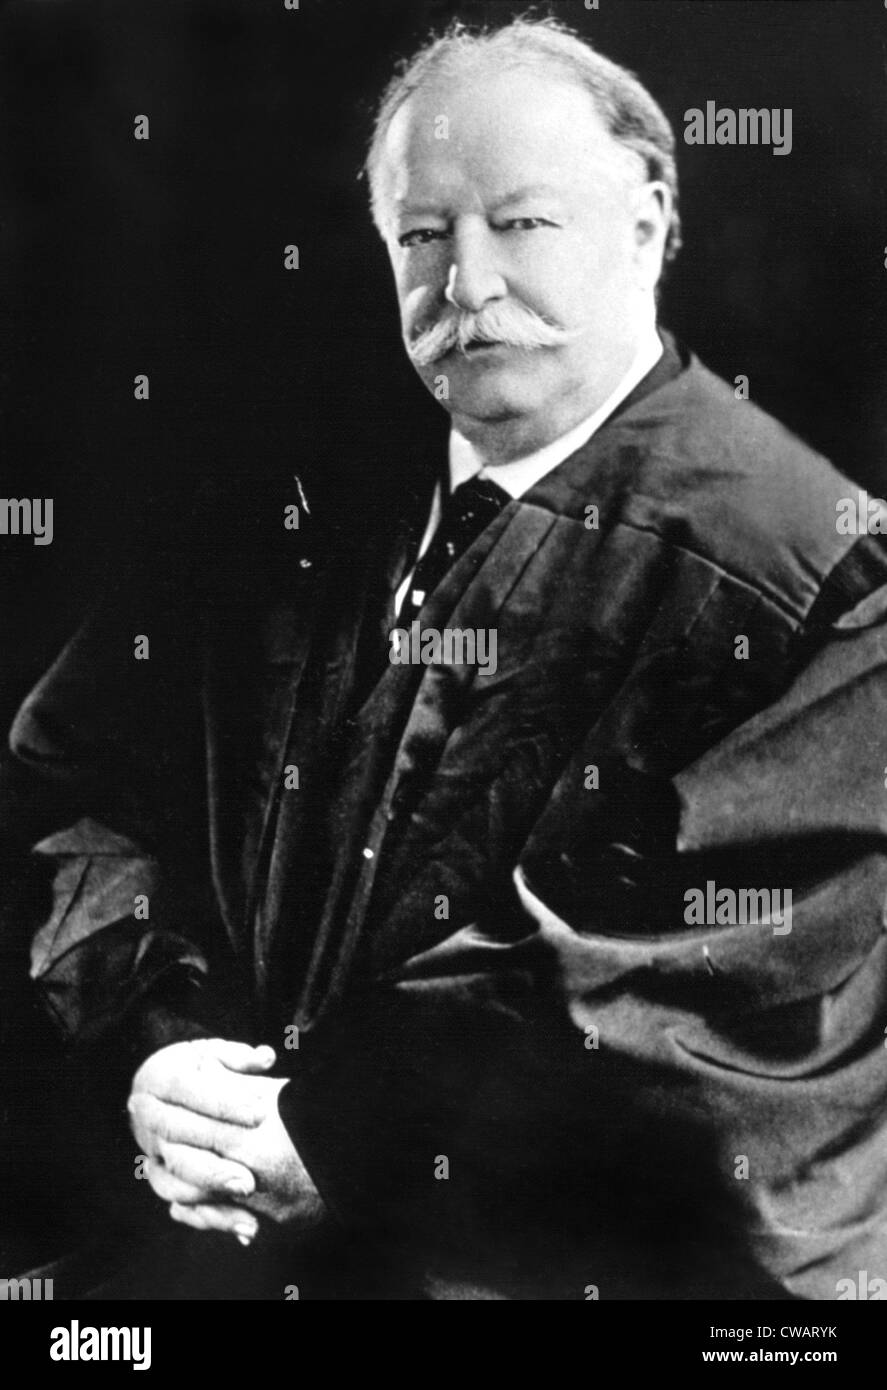 El ex Presidente de los Estados Unidos William Howard Taft, 4/28/38. Cortesía: CSU Archives / Everett Collection Foto de stock